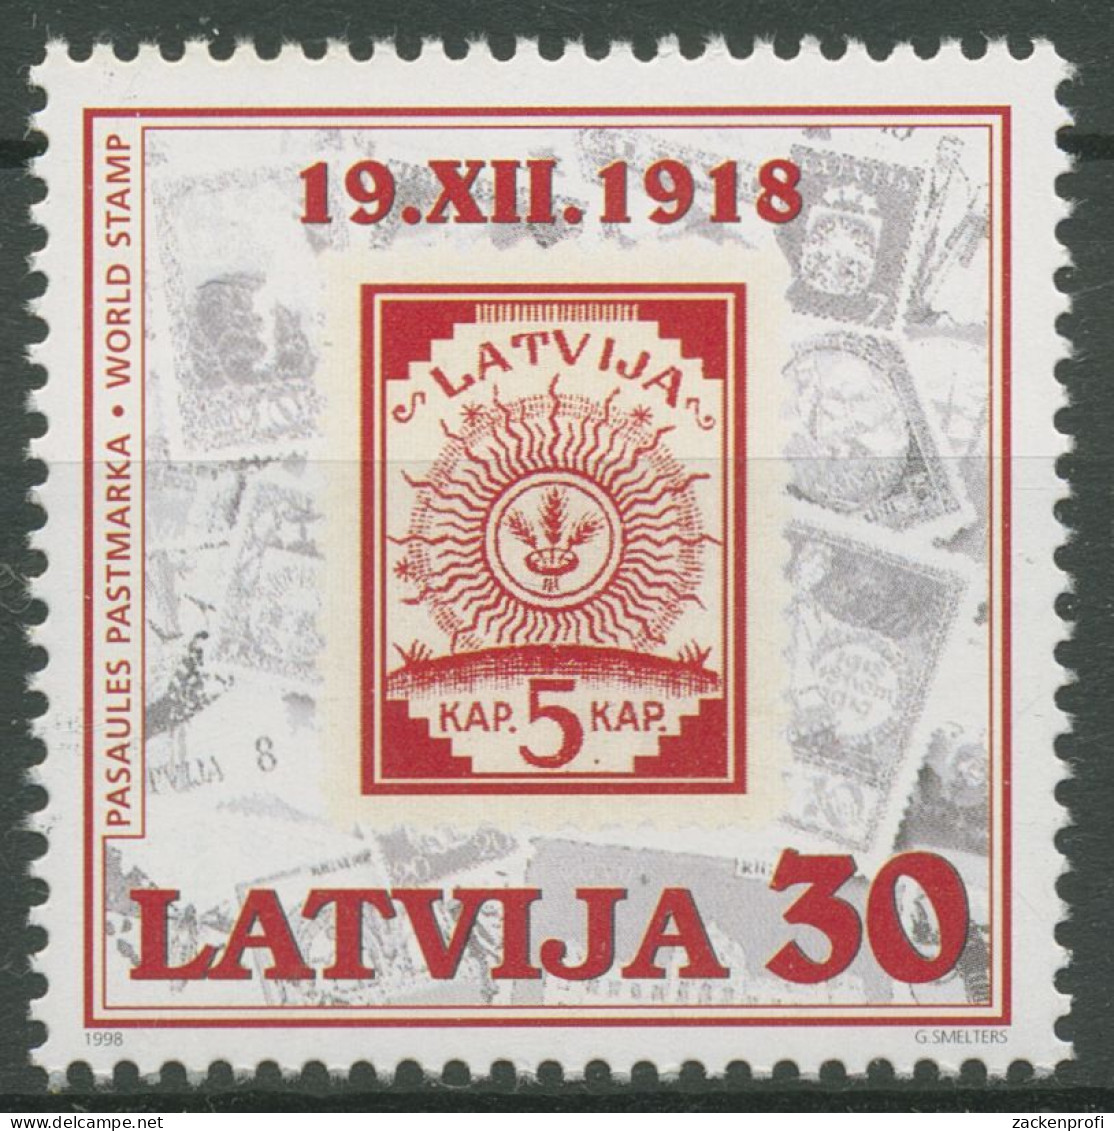 Lettland 1998 80 Jahre Briefmarken MiNr. 2 Ähren Im Sonnenkreis 487 Postfrisch - Latvia